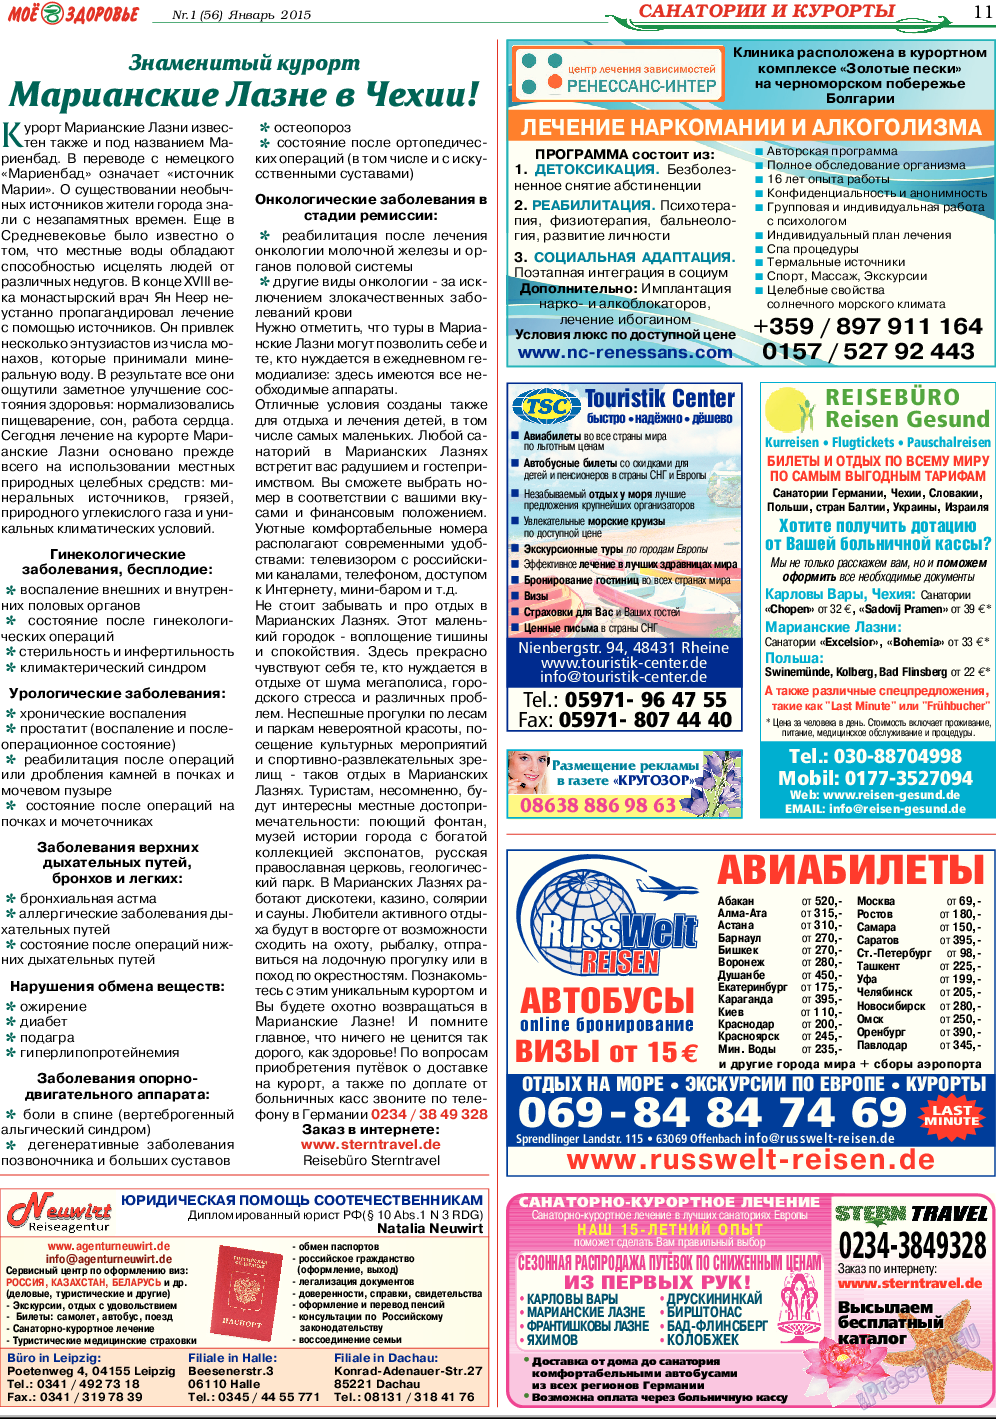 Кругозор, газета. 2015 №1 стр.11